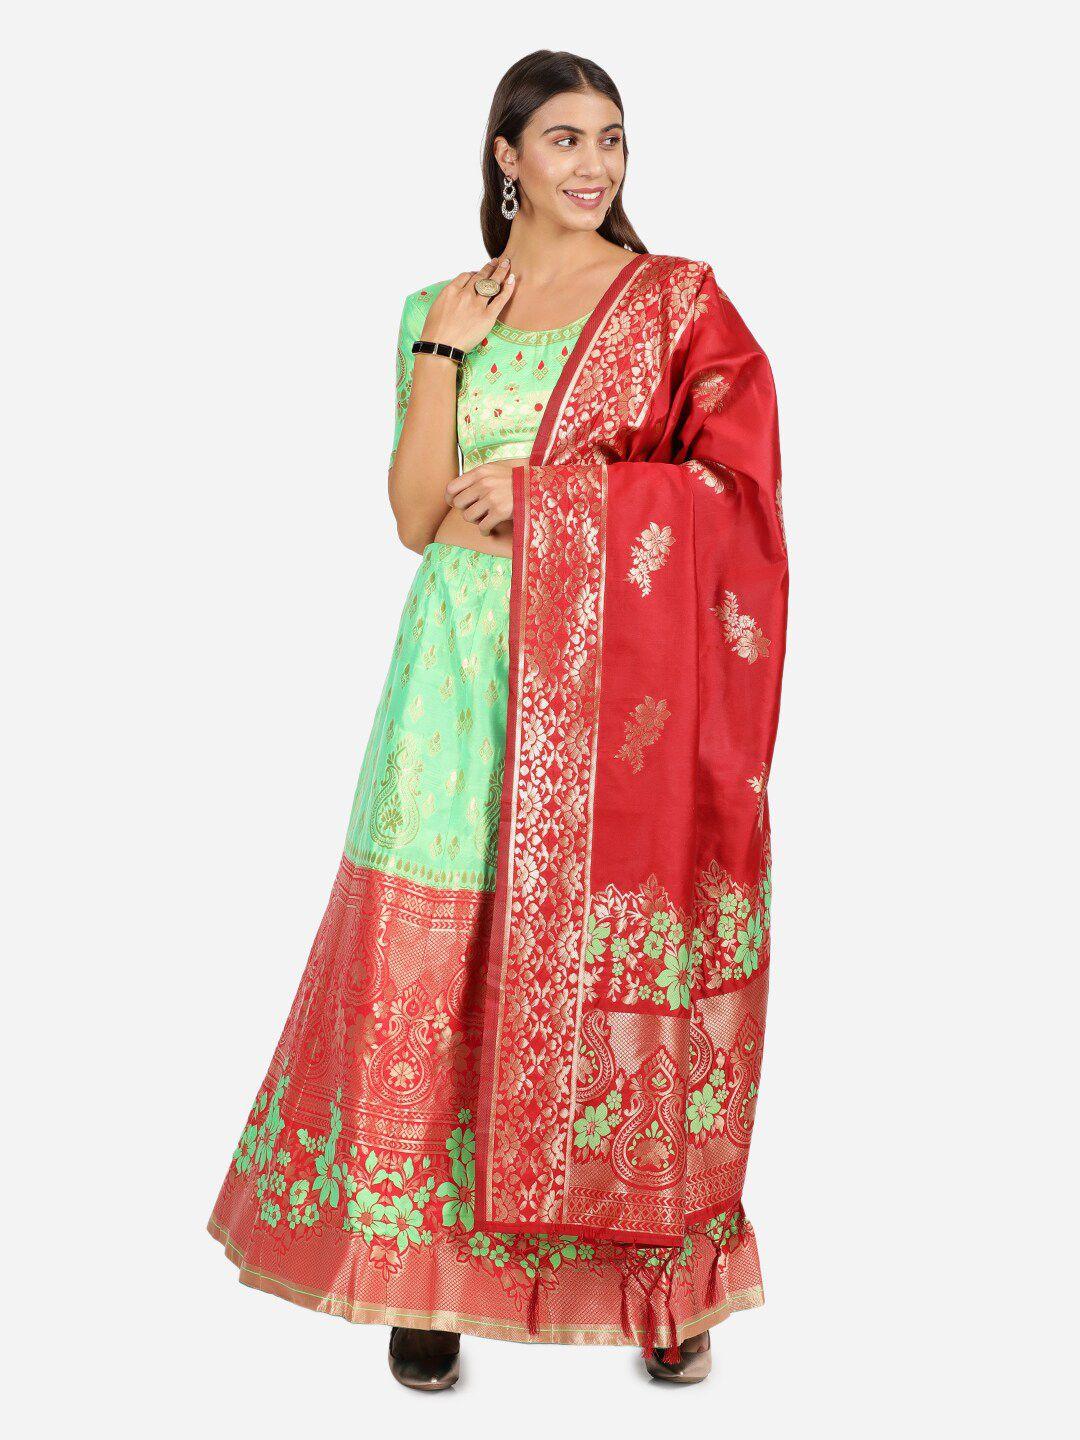 mitera-green-&-red-semi-stitched-raw-silk-lehenga-choli-with-dupatta